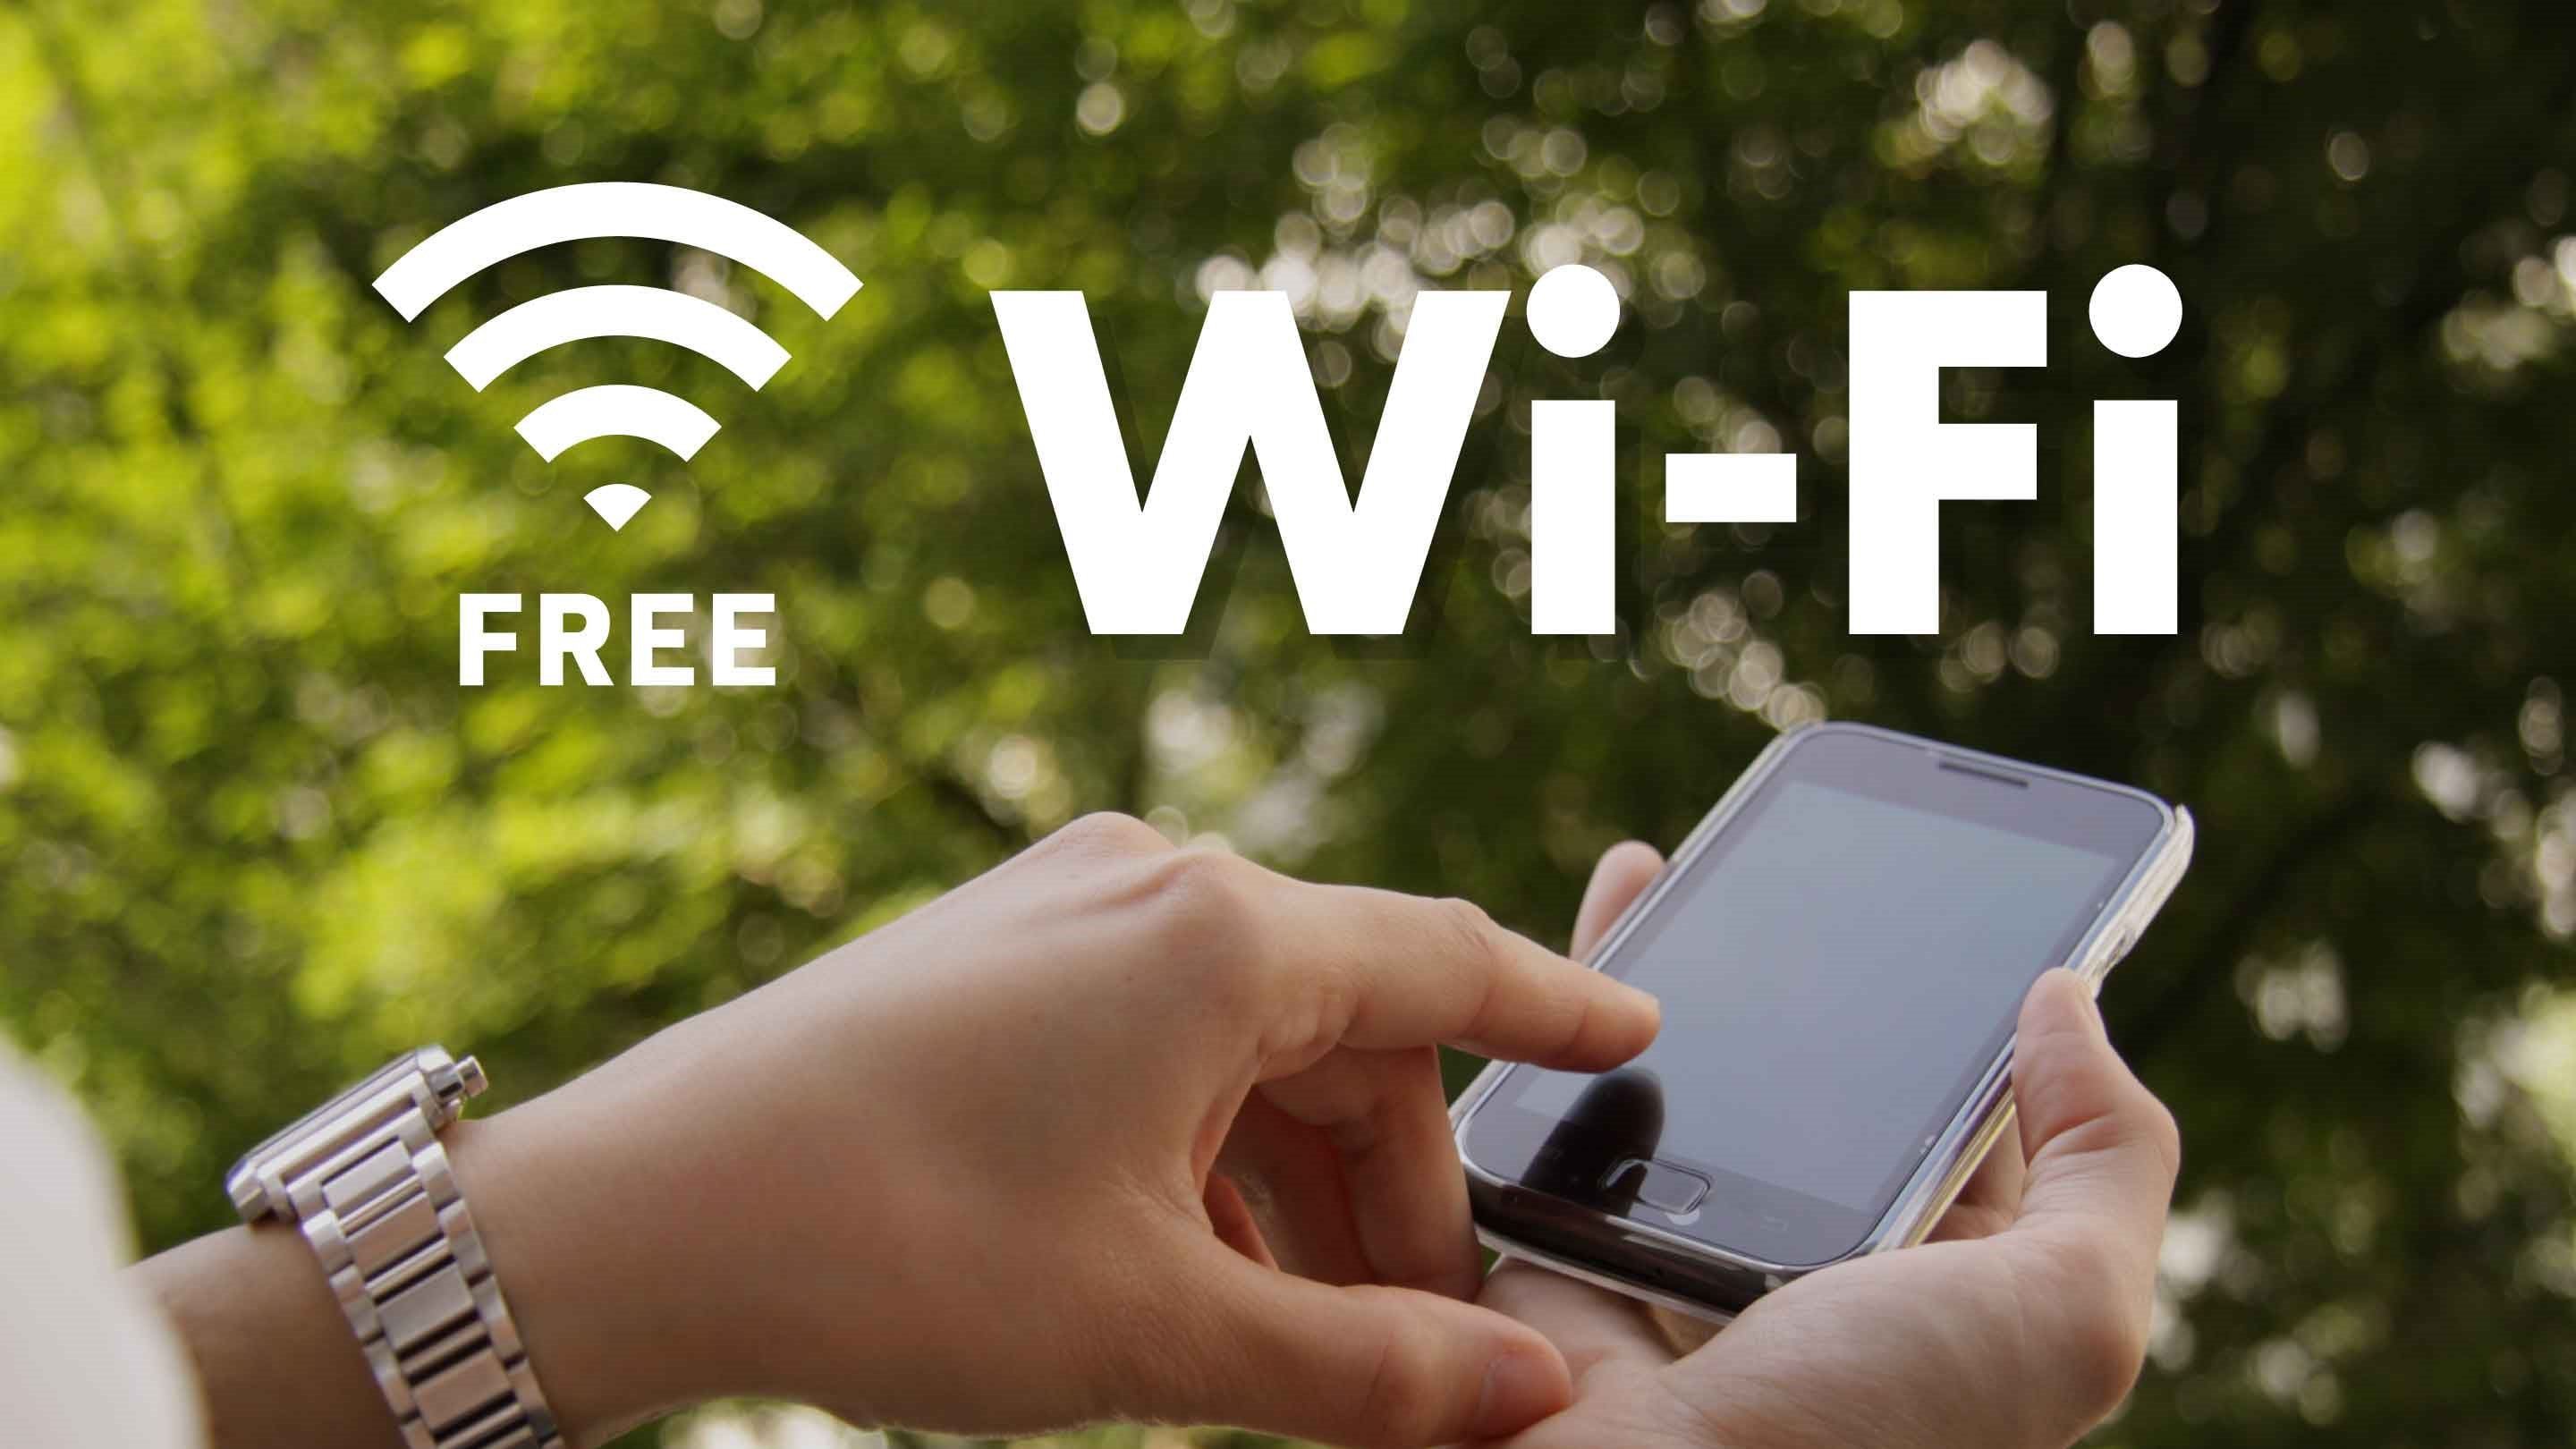 Koneksi Wi-Fi gratis! Jangan ragu untuk meminta kata sandi Anda (Kami juga meminjamkan router)